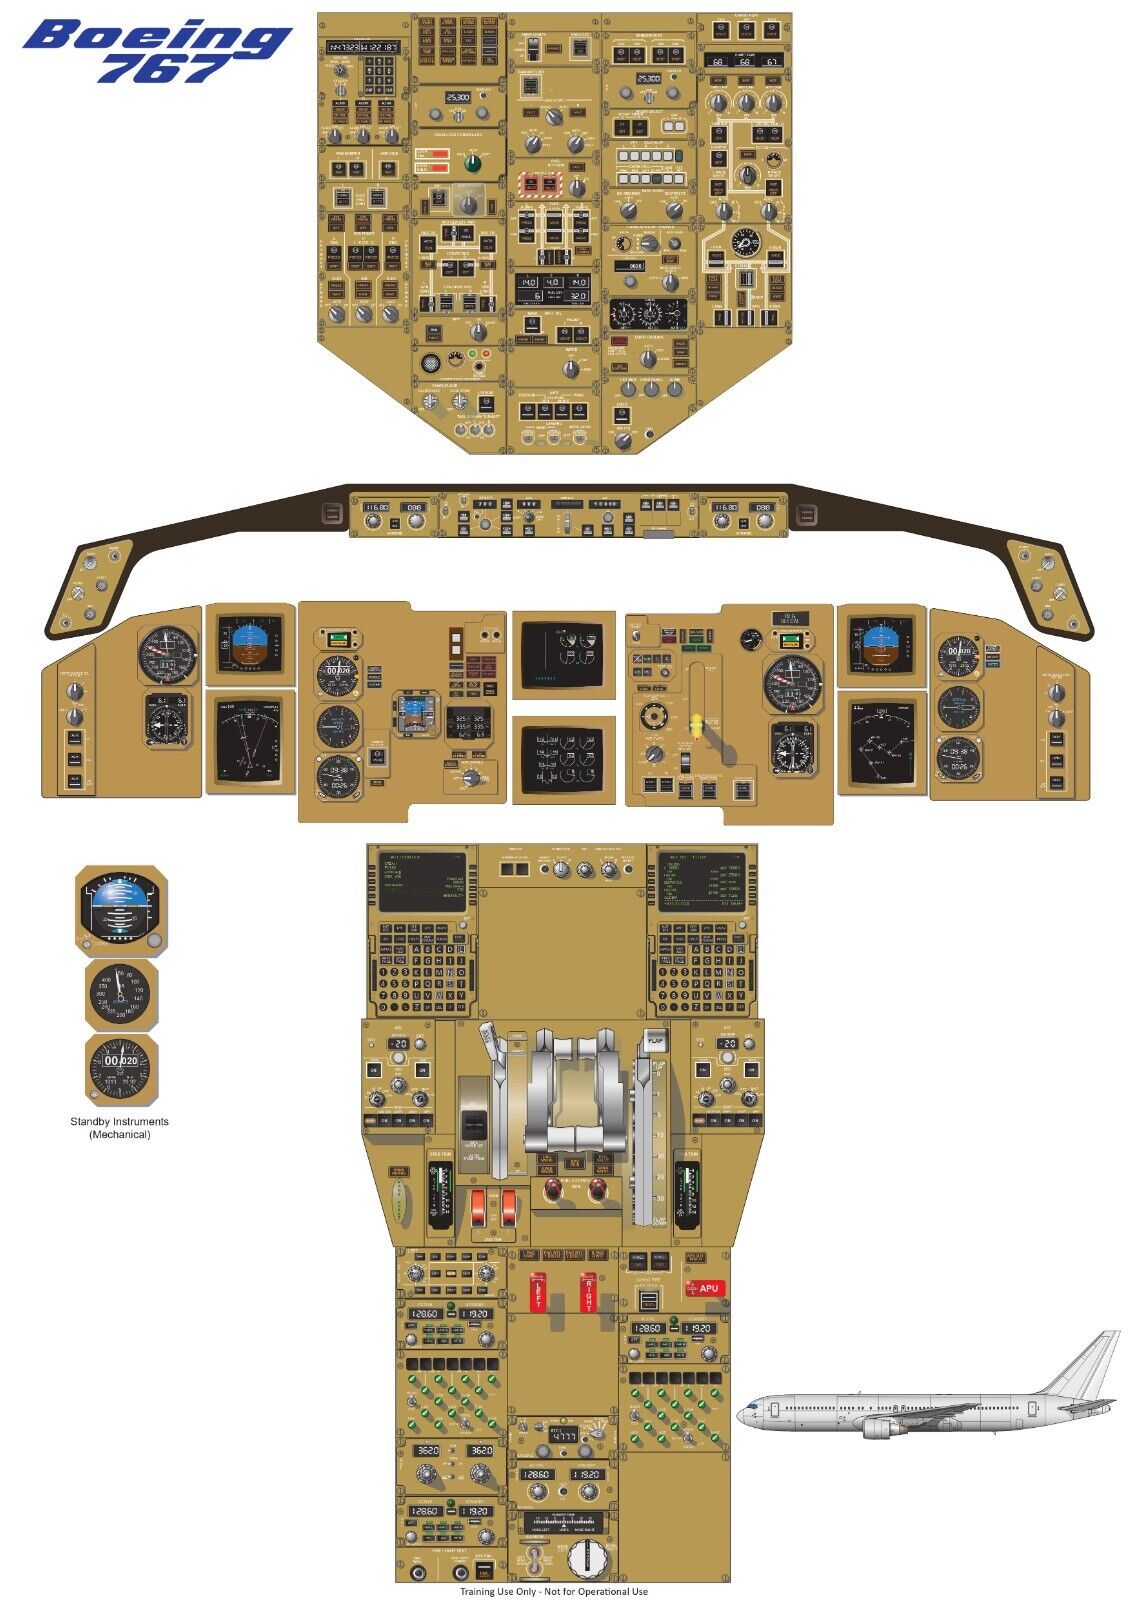 Boeing 767-300ER Cockpit Poster 24